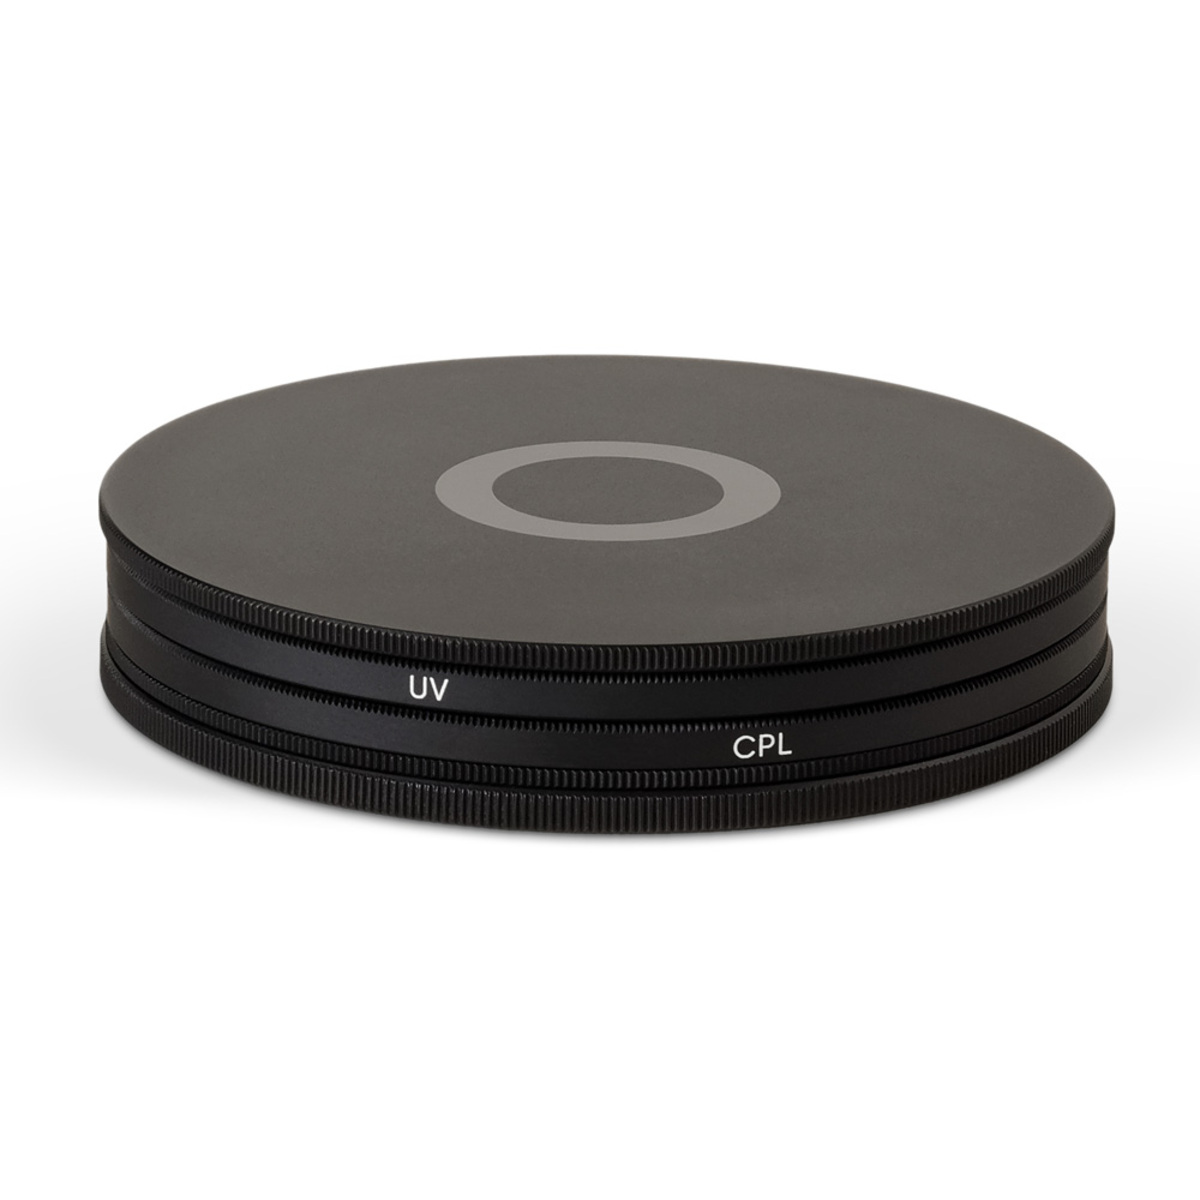 Urth 67mm UV + Circular Polarizing (CPL) Objektivfilter Kit (Plus+)